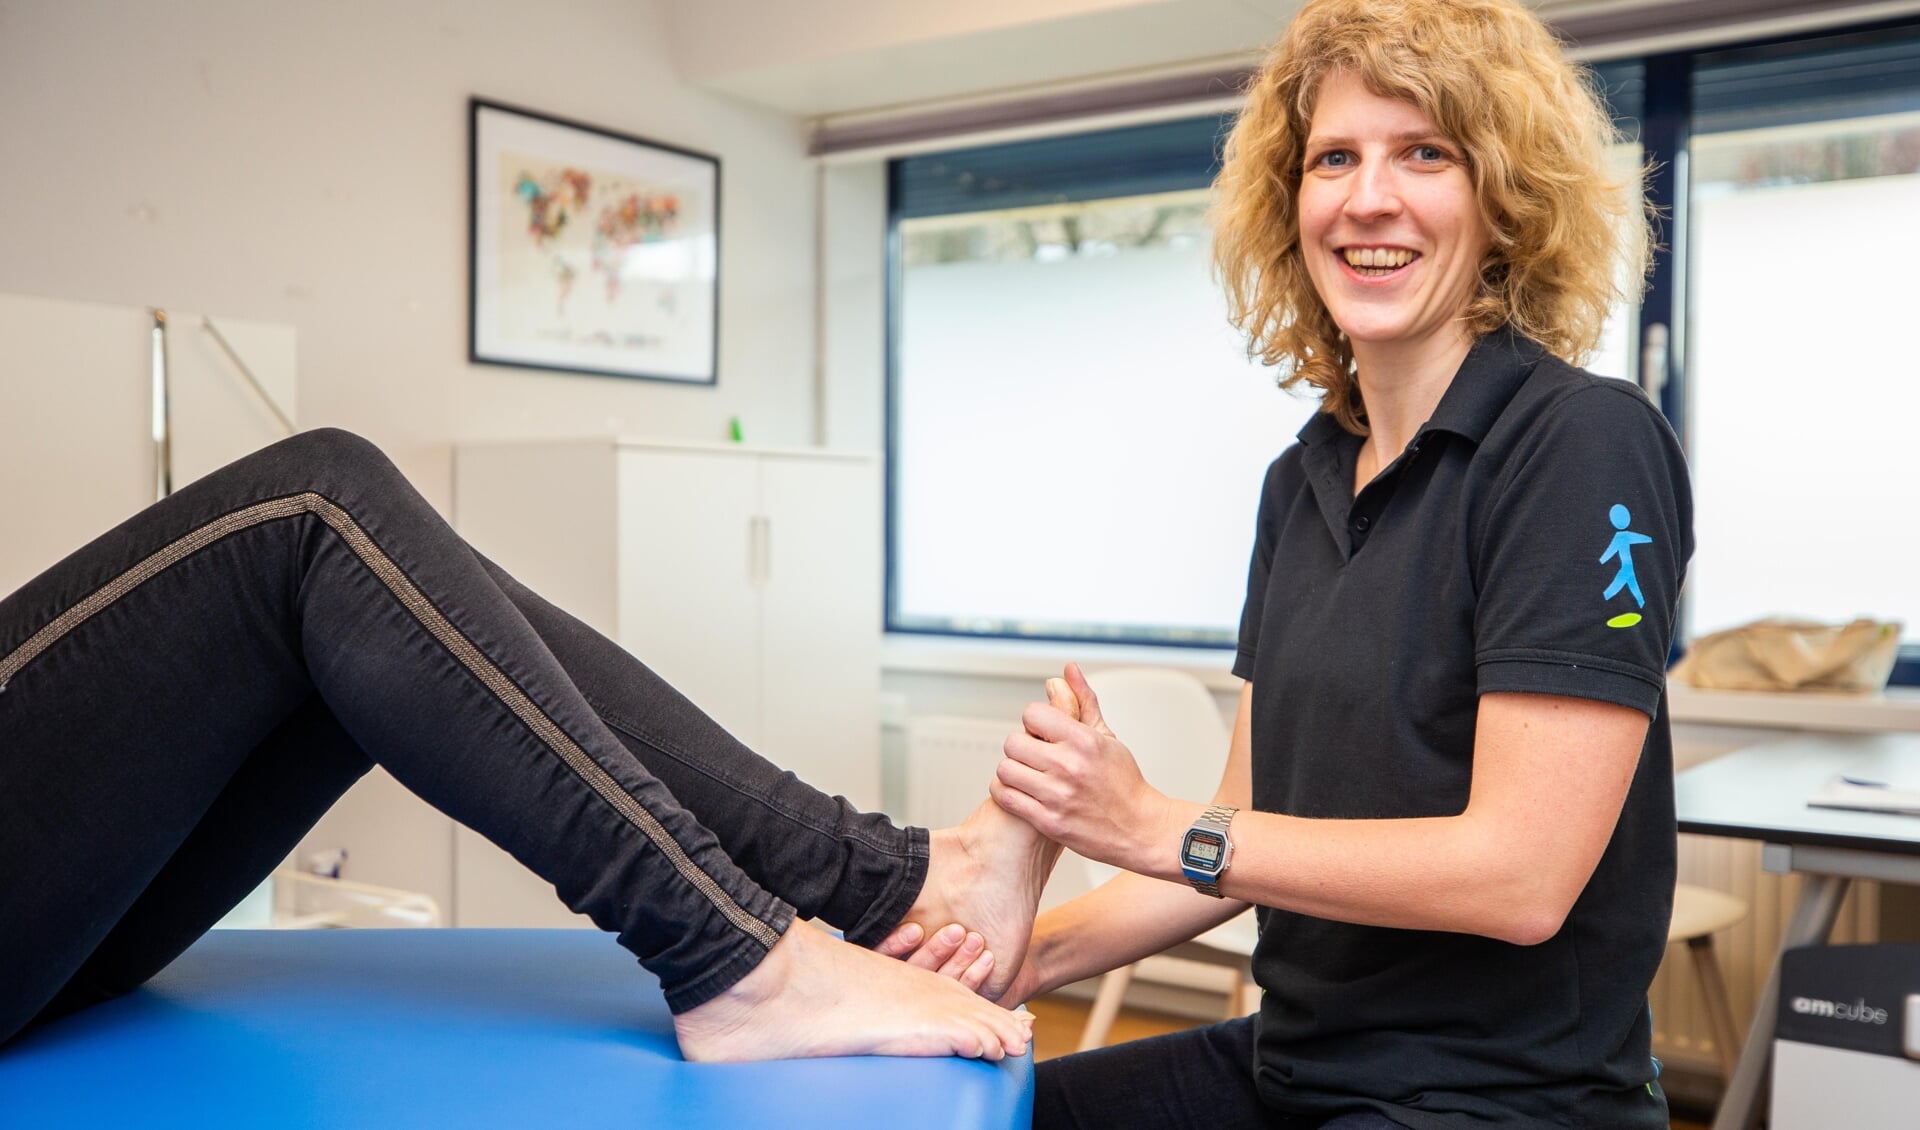 Podotherapeut Wietske Hiddink behandelt een patiënt in haar praktijk.